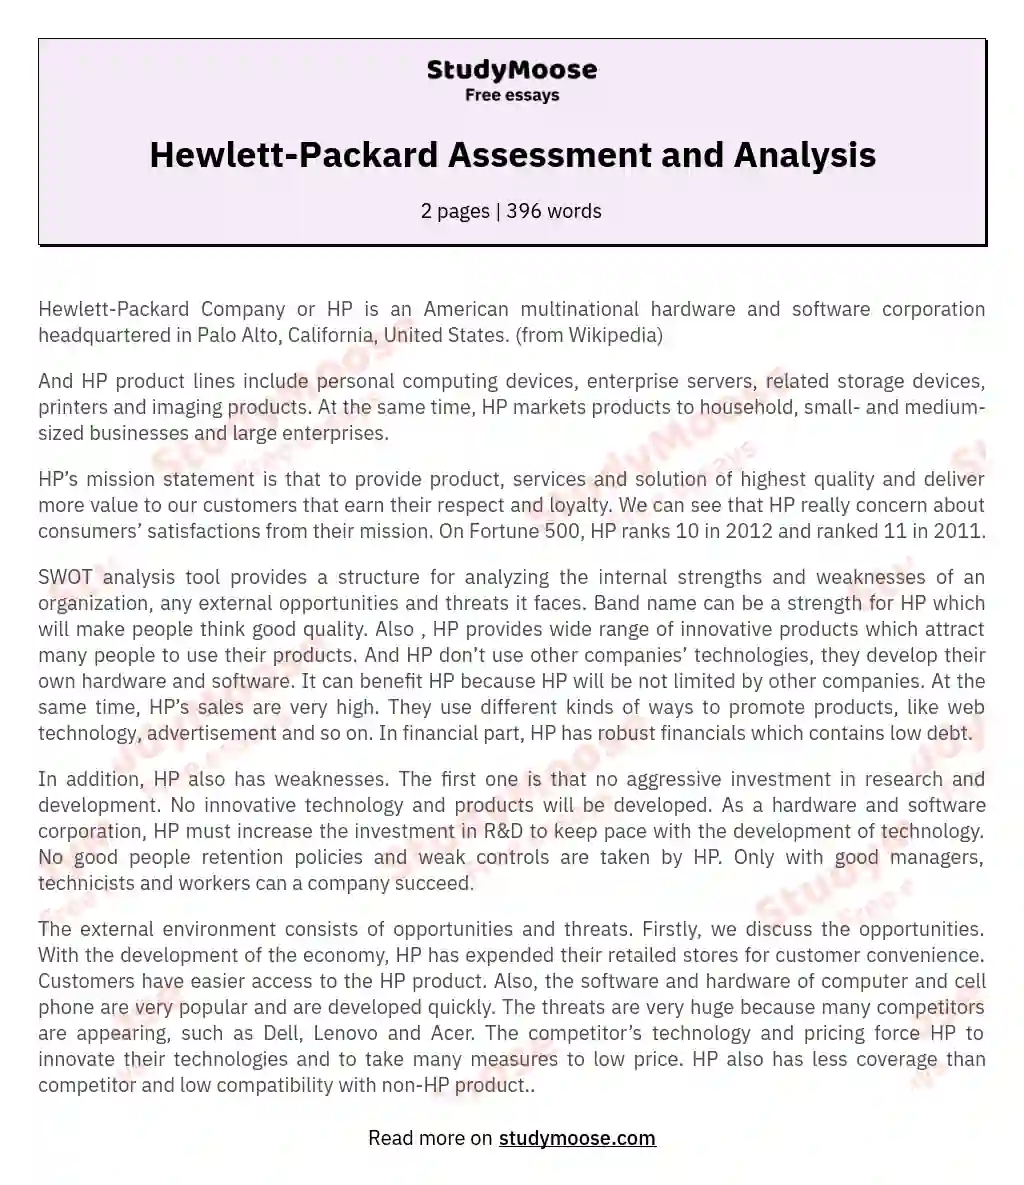 Hewlett-Packard Assessment and Analysis essay